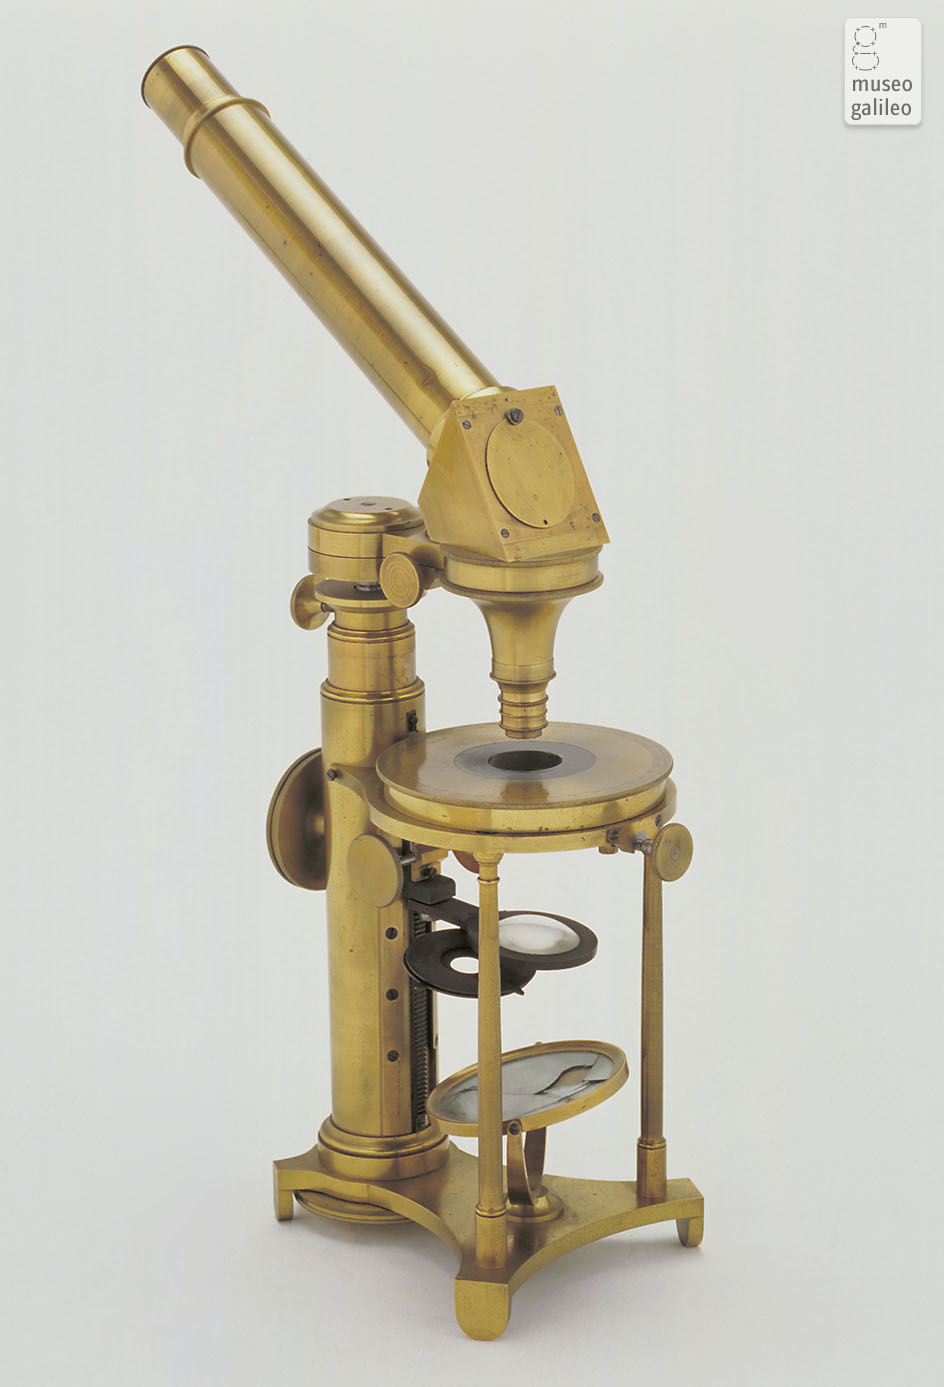 Compound microscope (Inv. 3267)